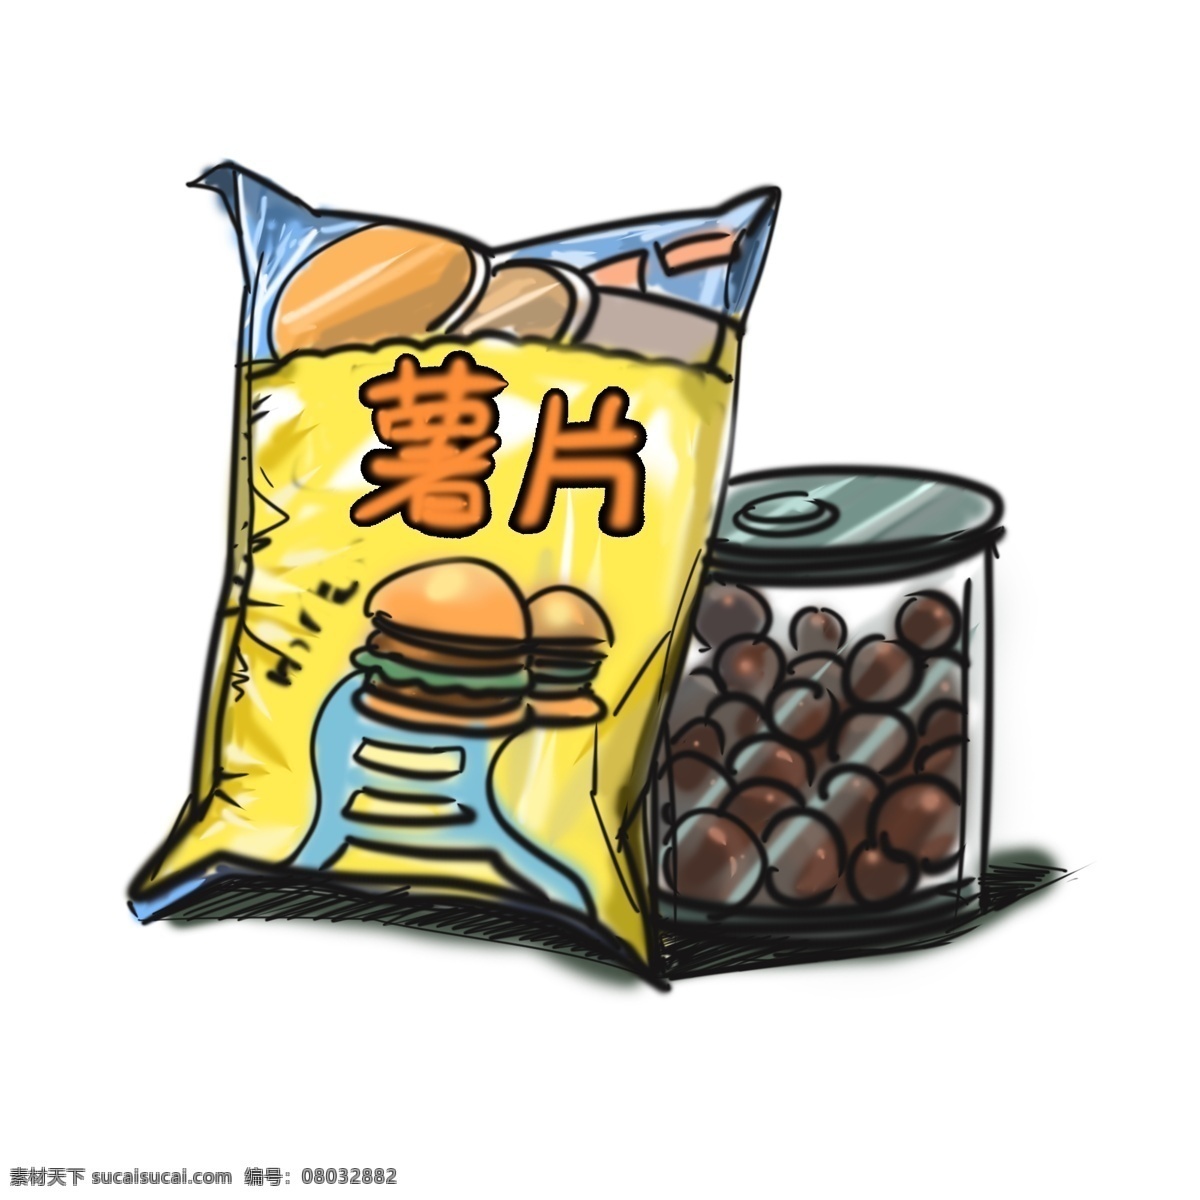 零食 主题 薯片 巧克力 卡通 手绘 汉堡口味 黄色包装 巧克力豆 罐装可可豆 美食 卡通风格 插画手绘